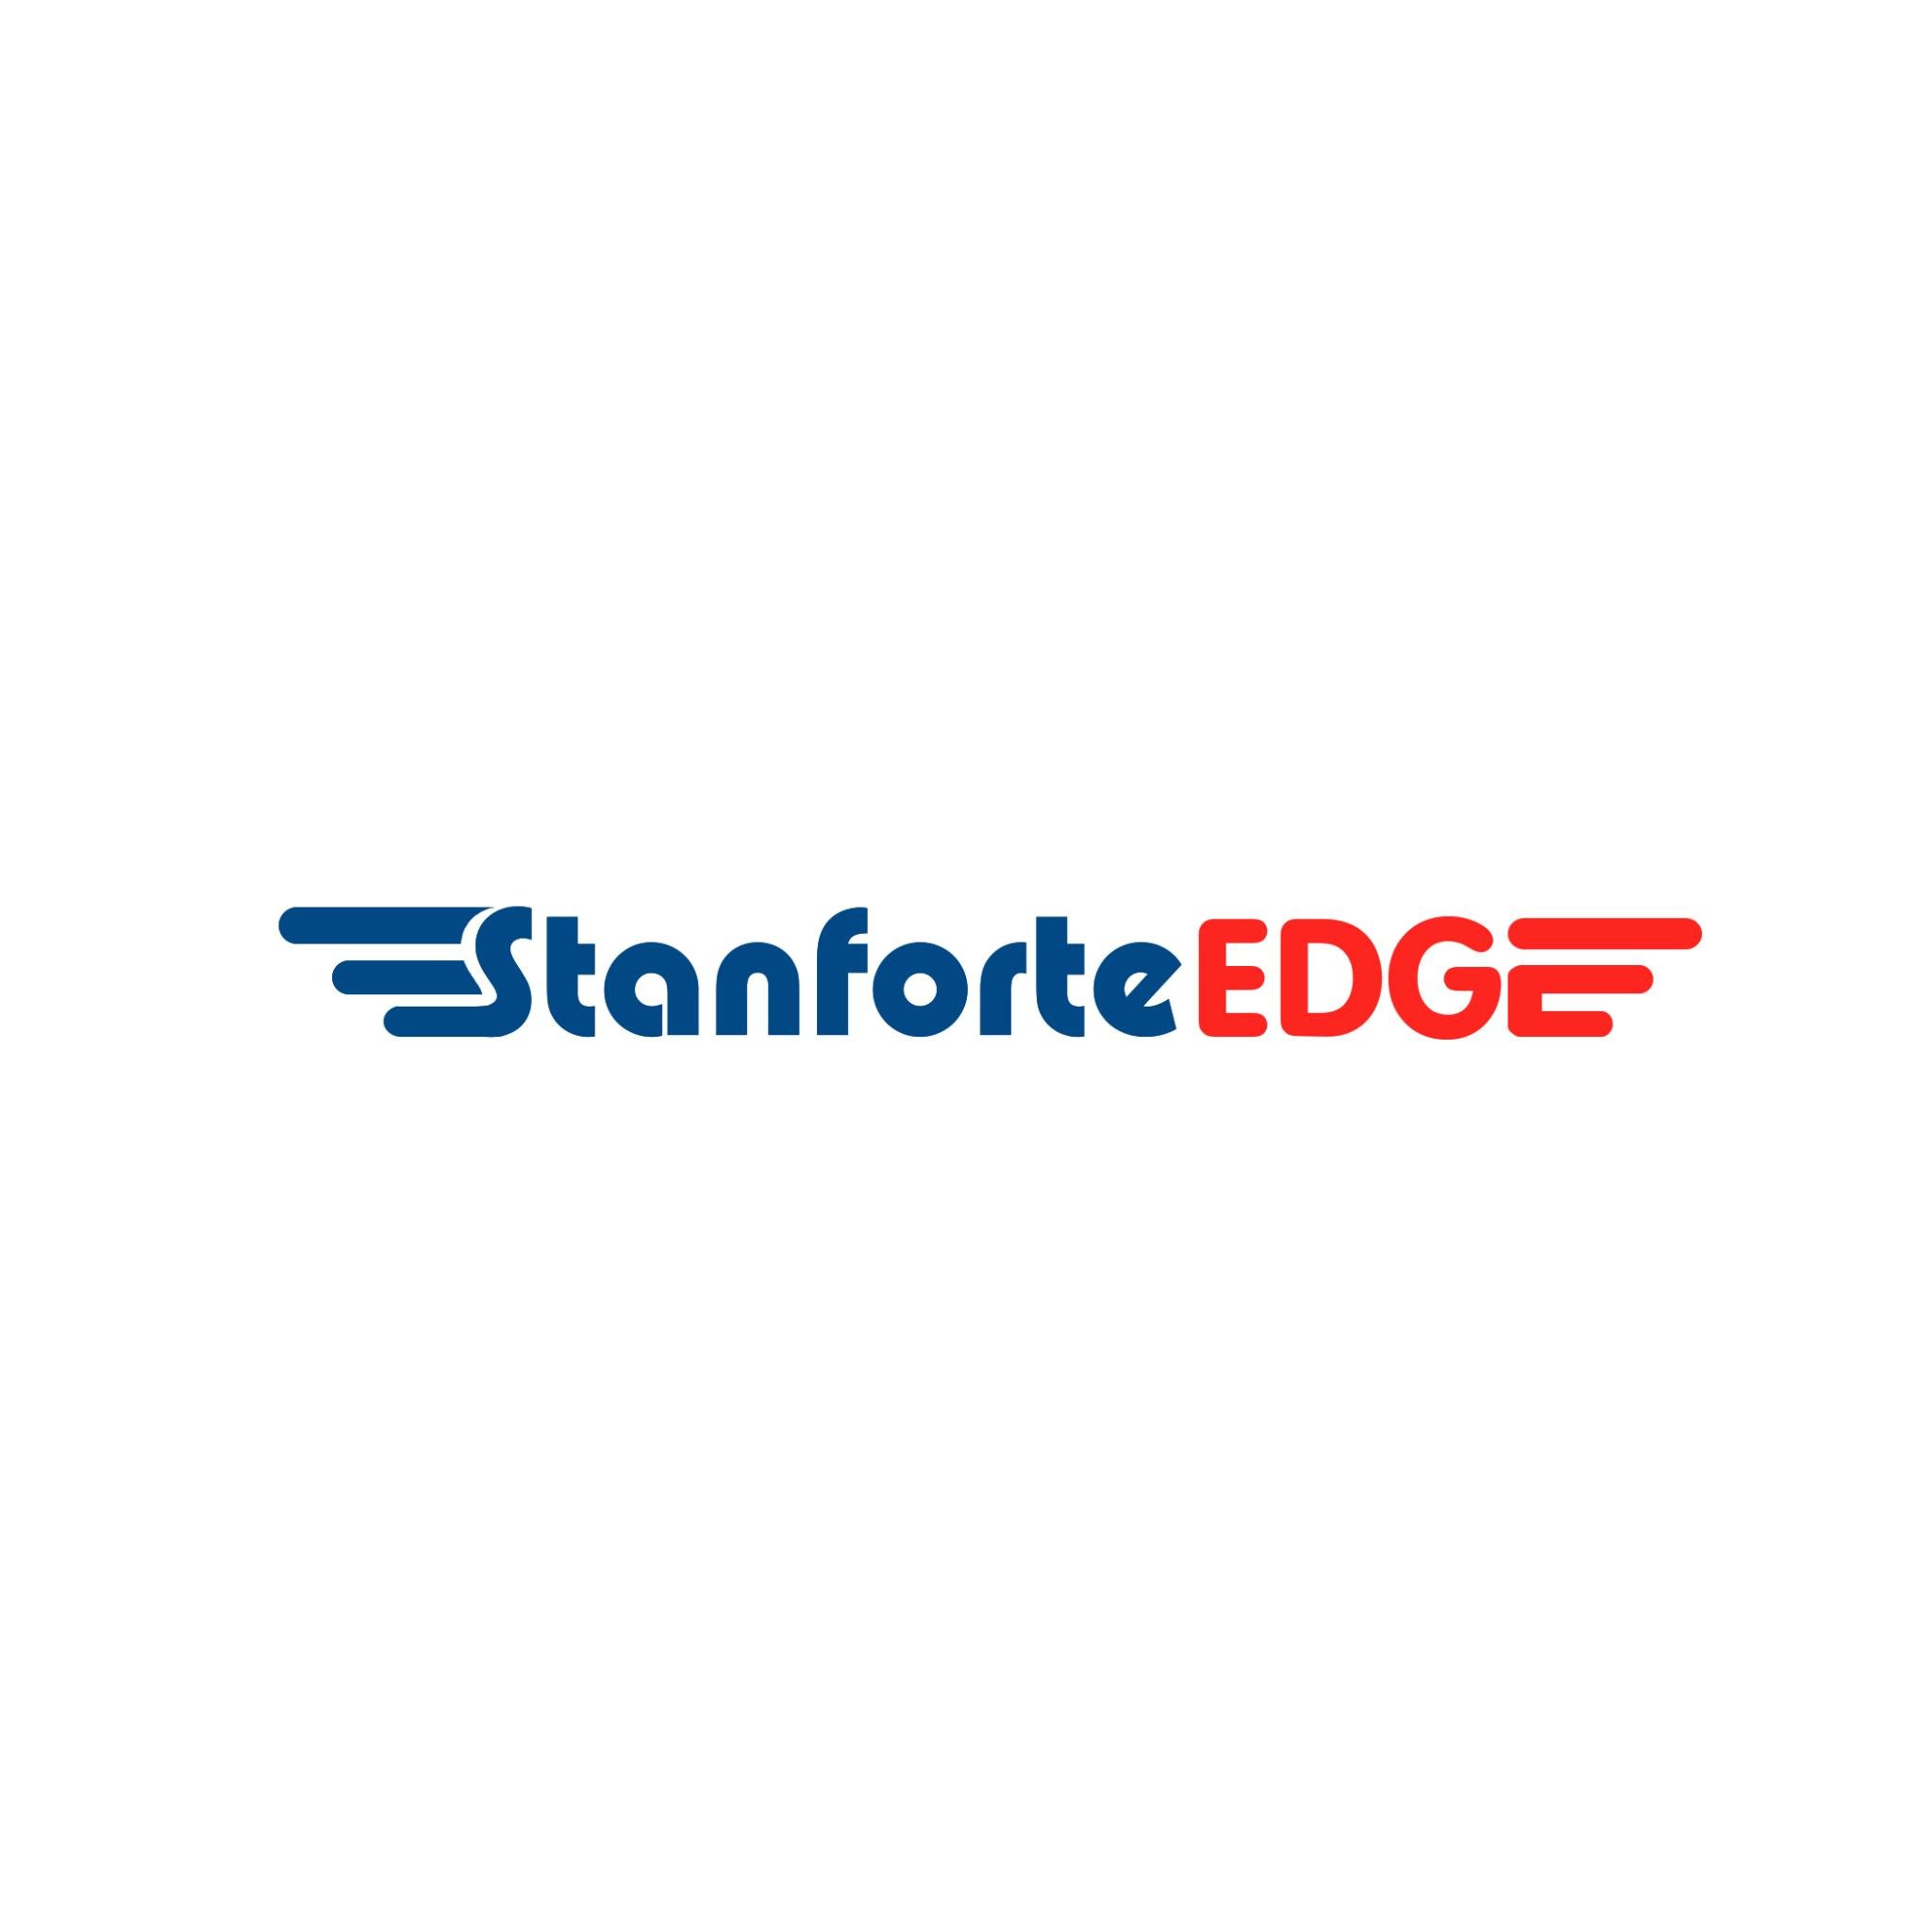 Stanforte Edge is a Non-Governmental and Non-Profit Organization.